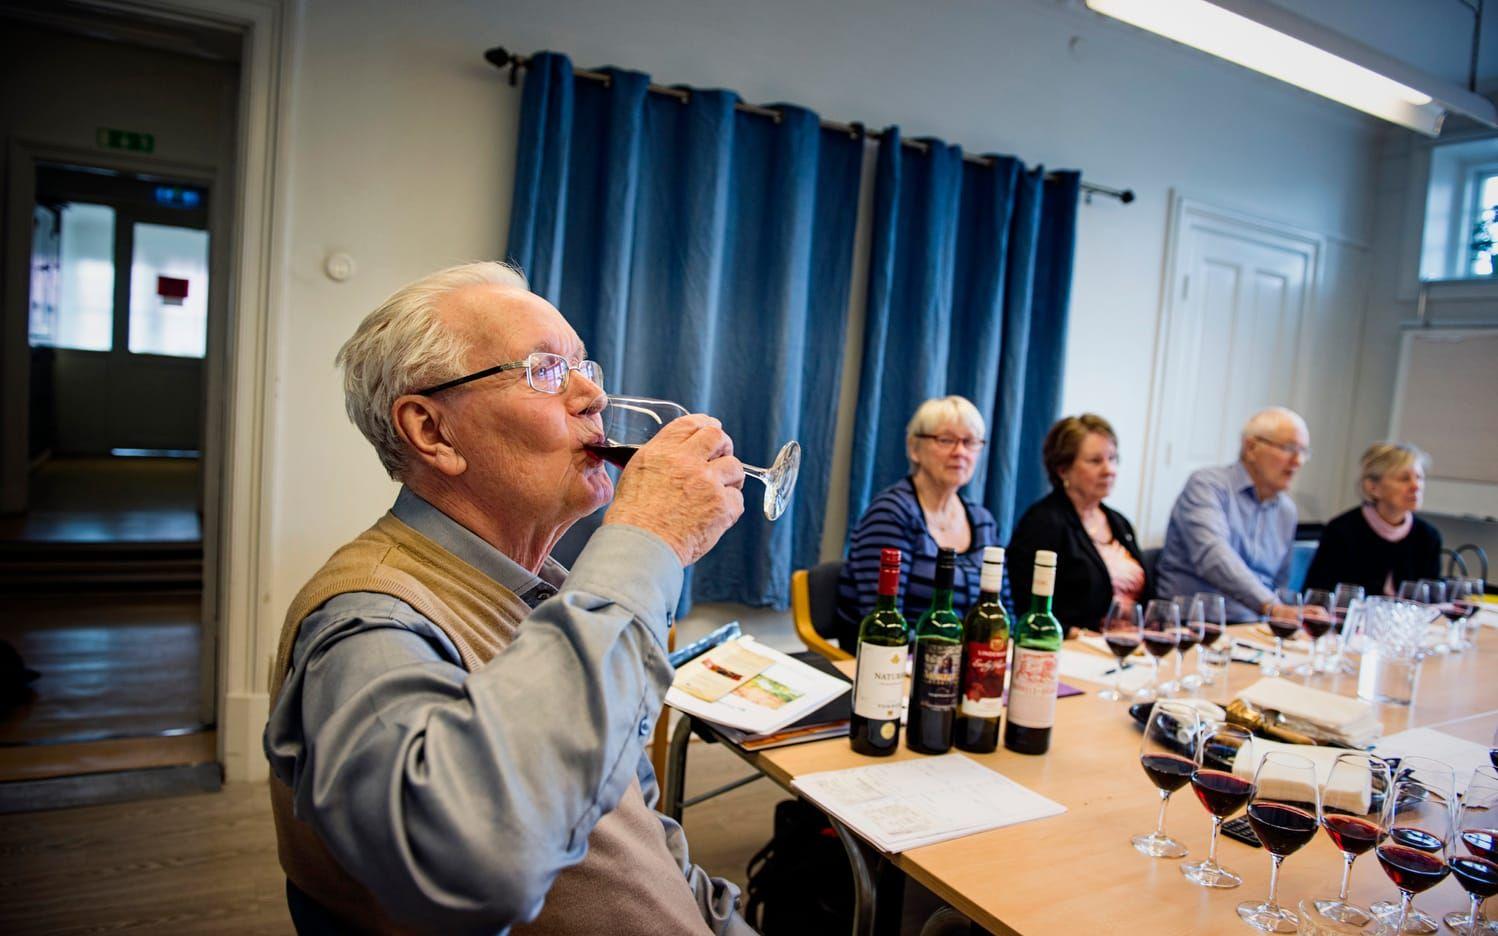 I femton år har pensionärer gått på vinprovning på Allégårdens pensionärsförening, men nu har social resursnämnd beslutat att de inte får fortsätta utan att ansöka om alkoholtillstånd. Märkligt, tycker Arne Eriksson, som hållit i vinprovningarna i tio år. Bild: Jonas Lindstedt
